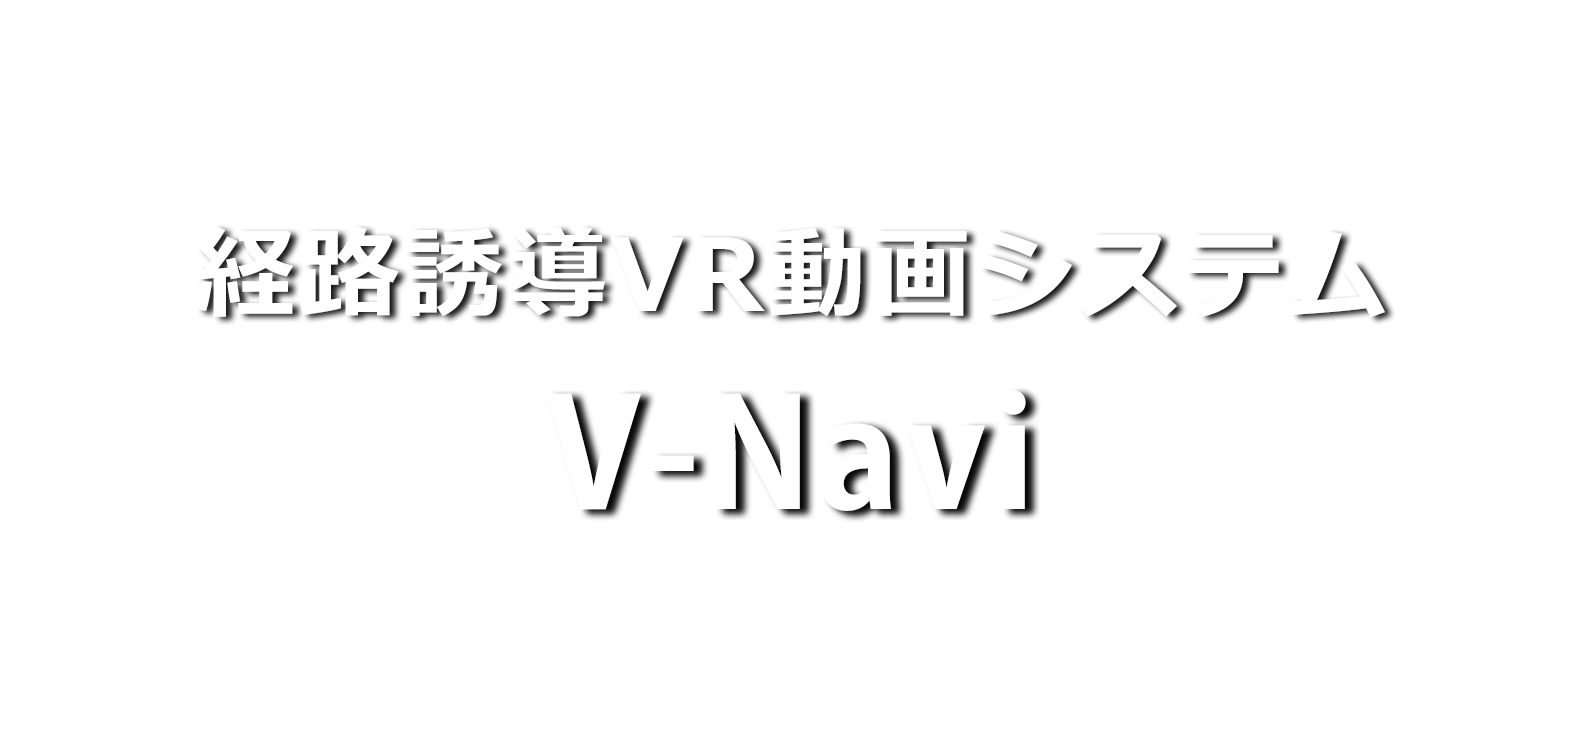 経路誘導VR動画システムV-Navi